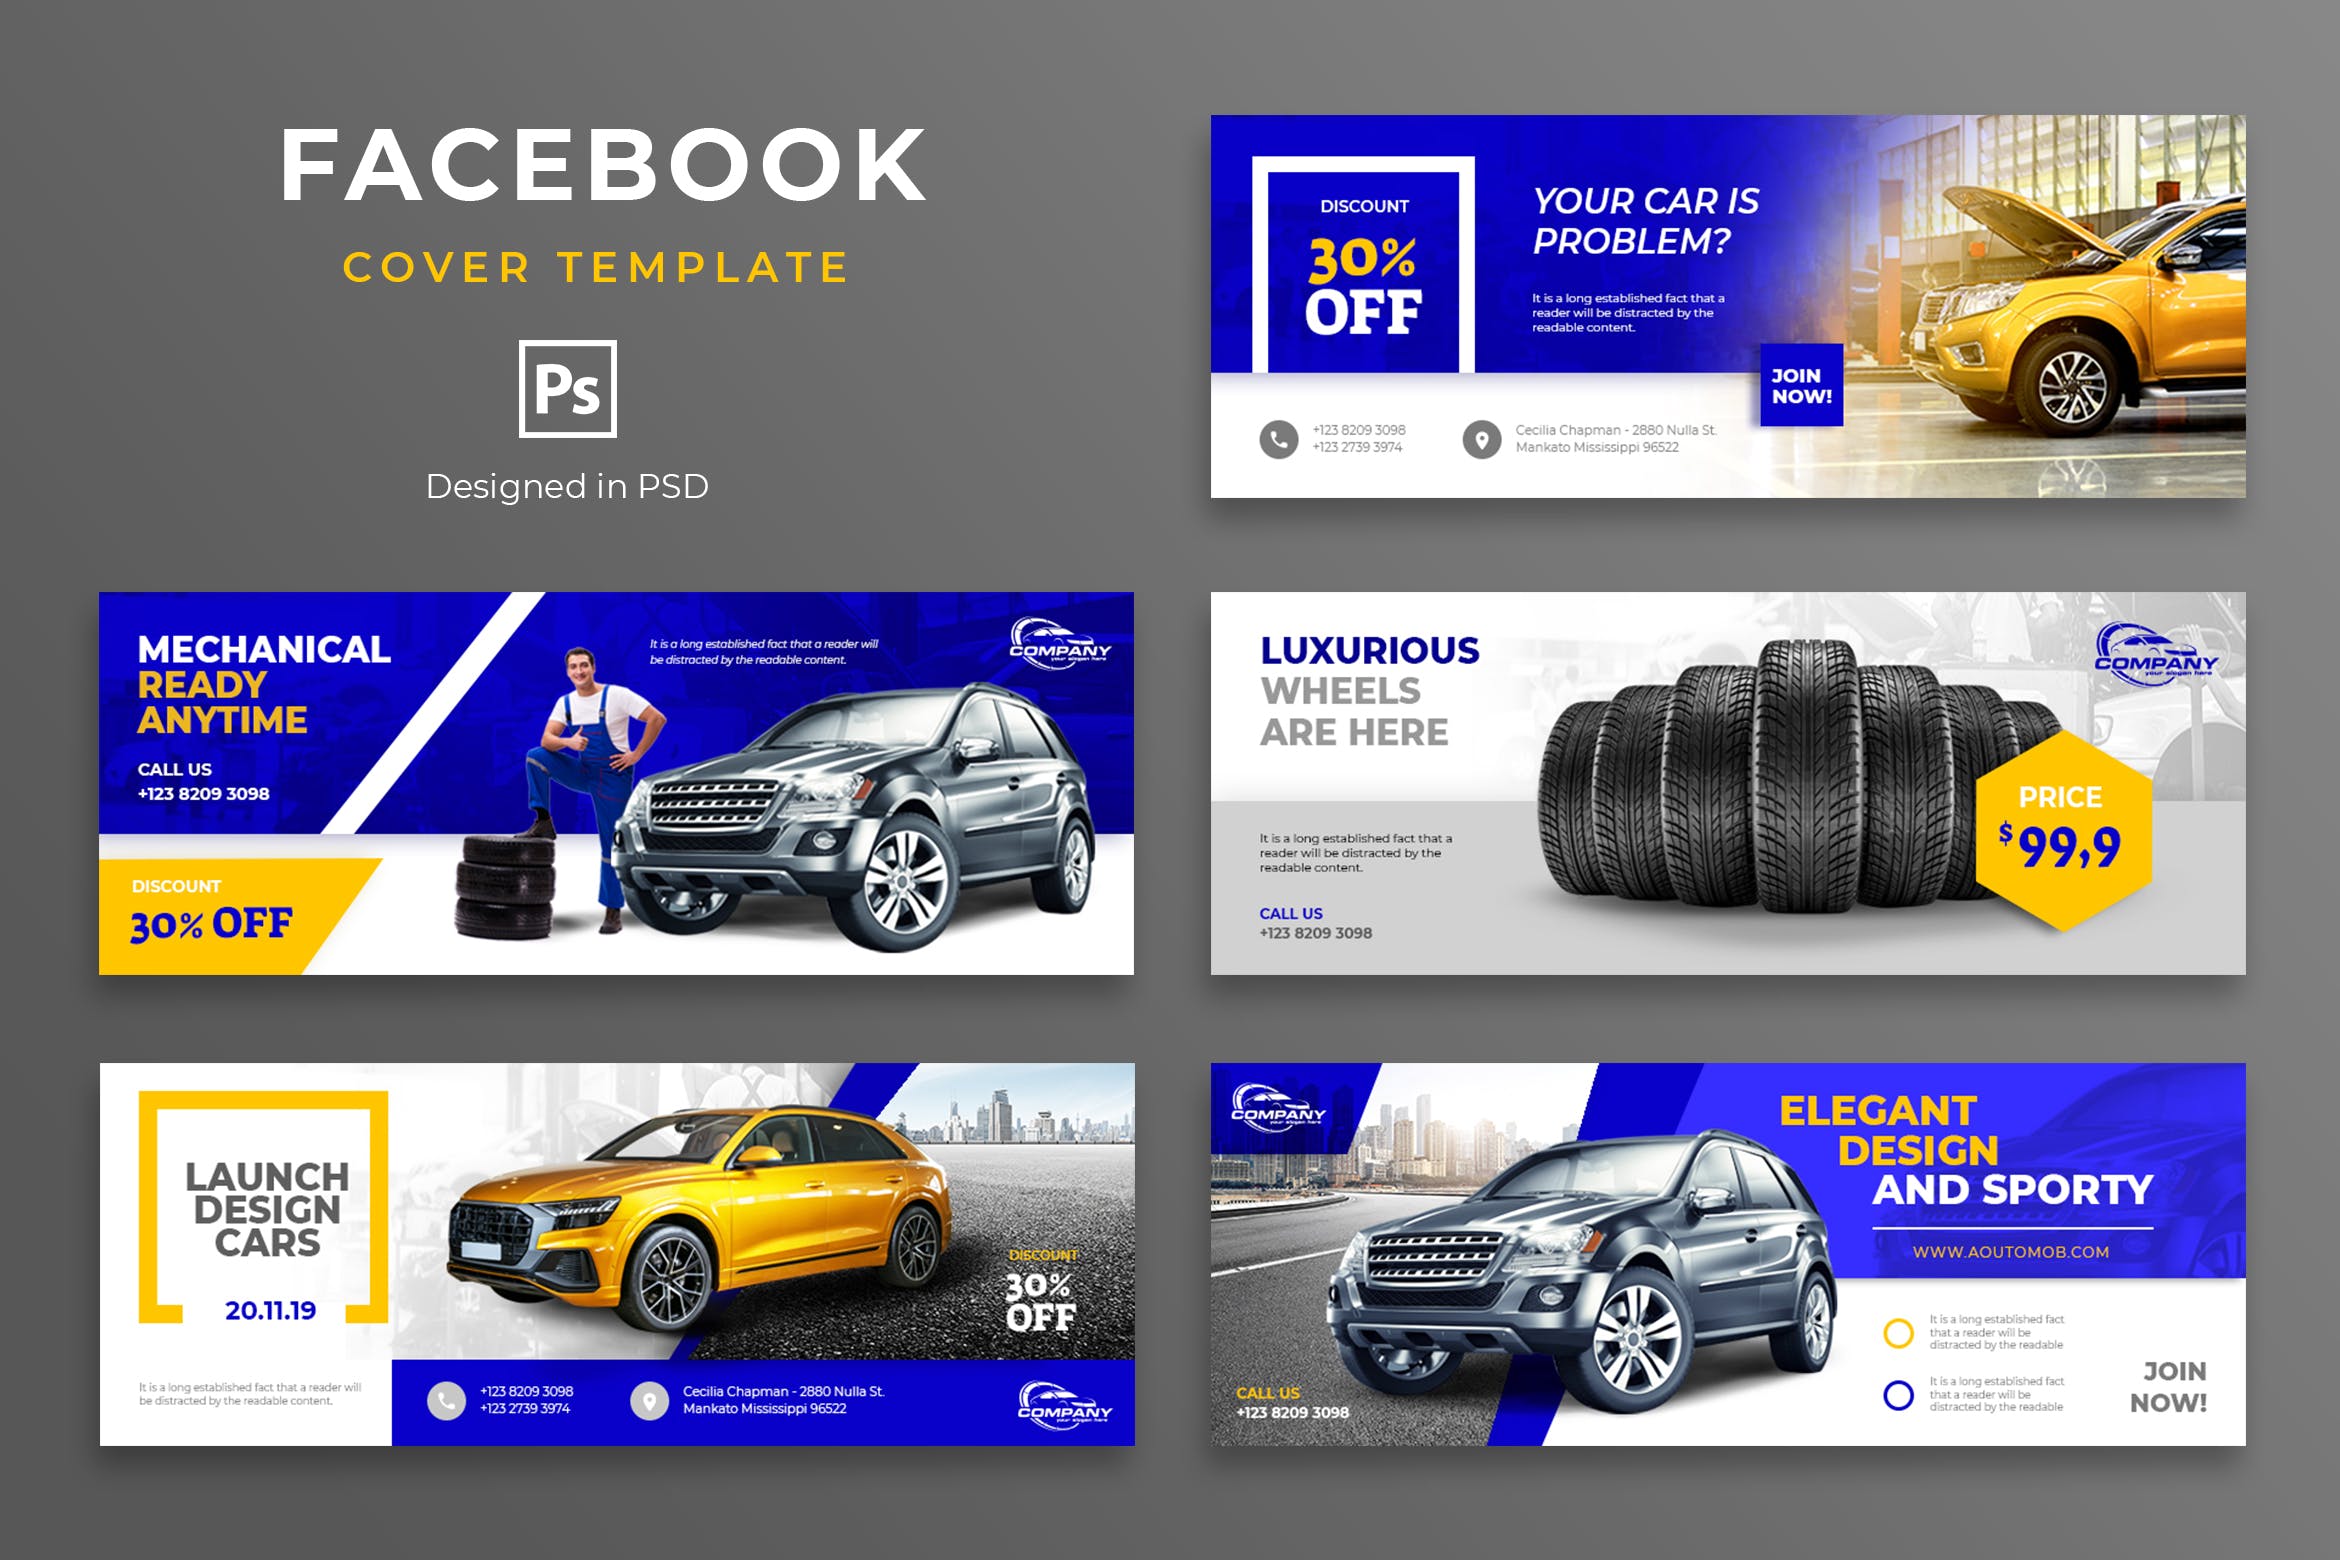 汽车品牌Facebook营销推广主页封面设计模板非凡图库精选 Automotive Facebook Cover Template插图